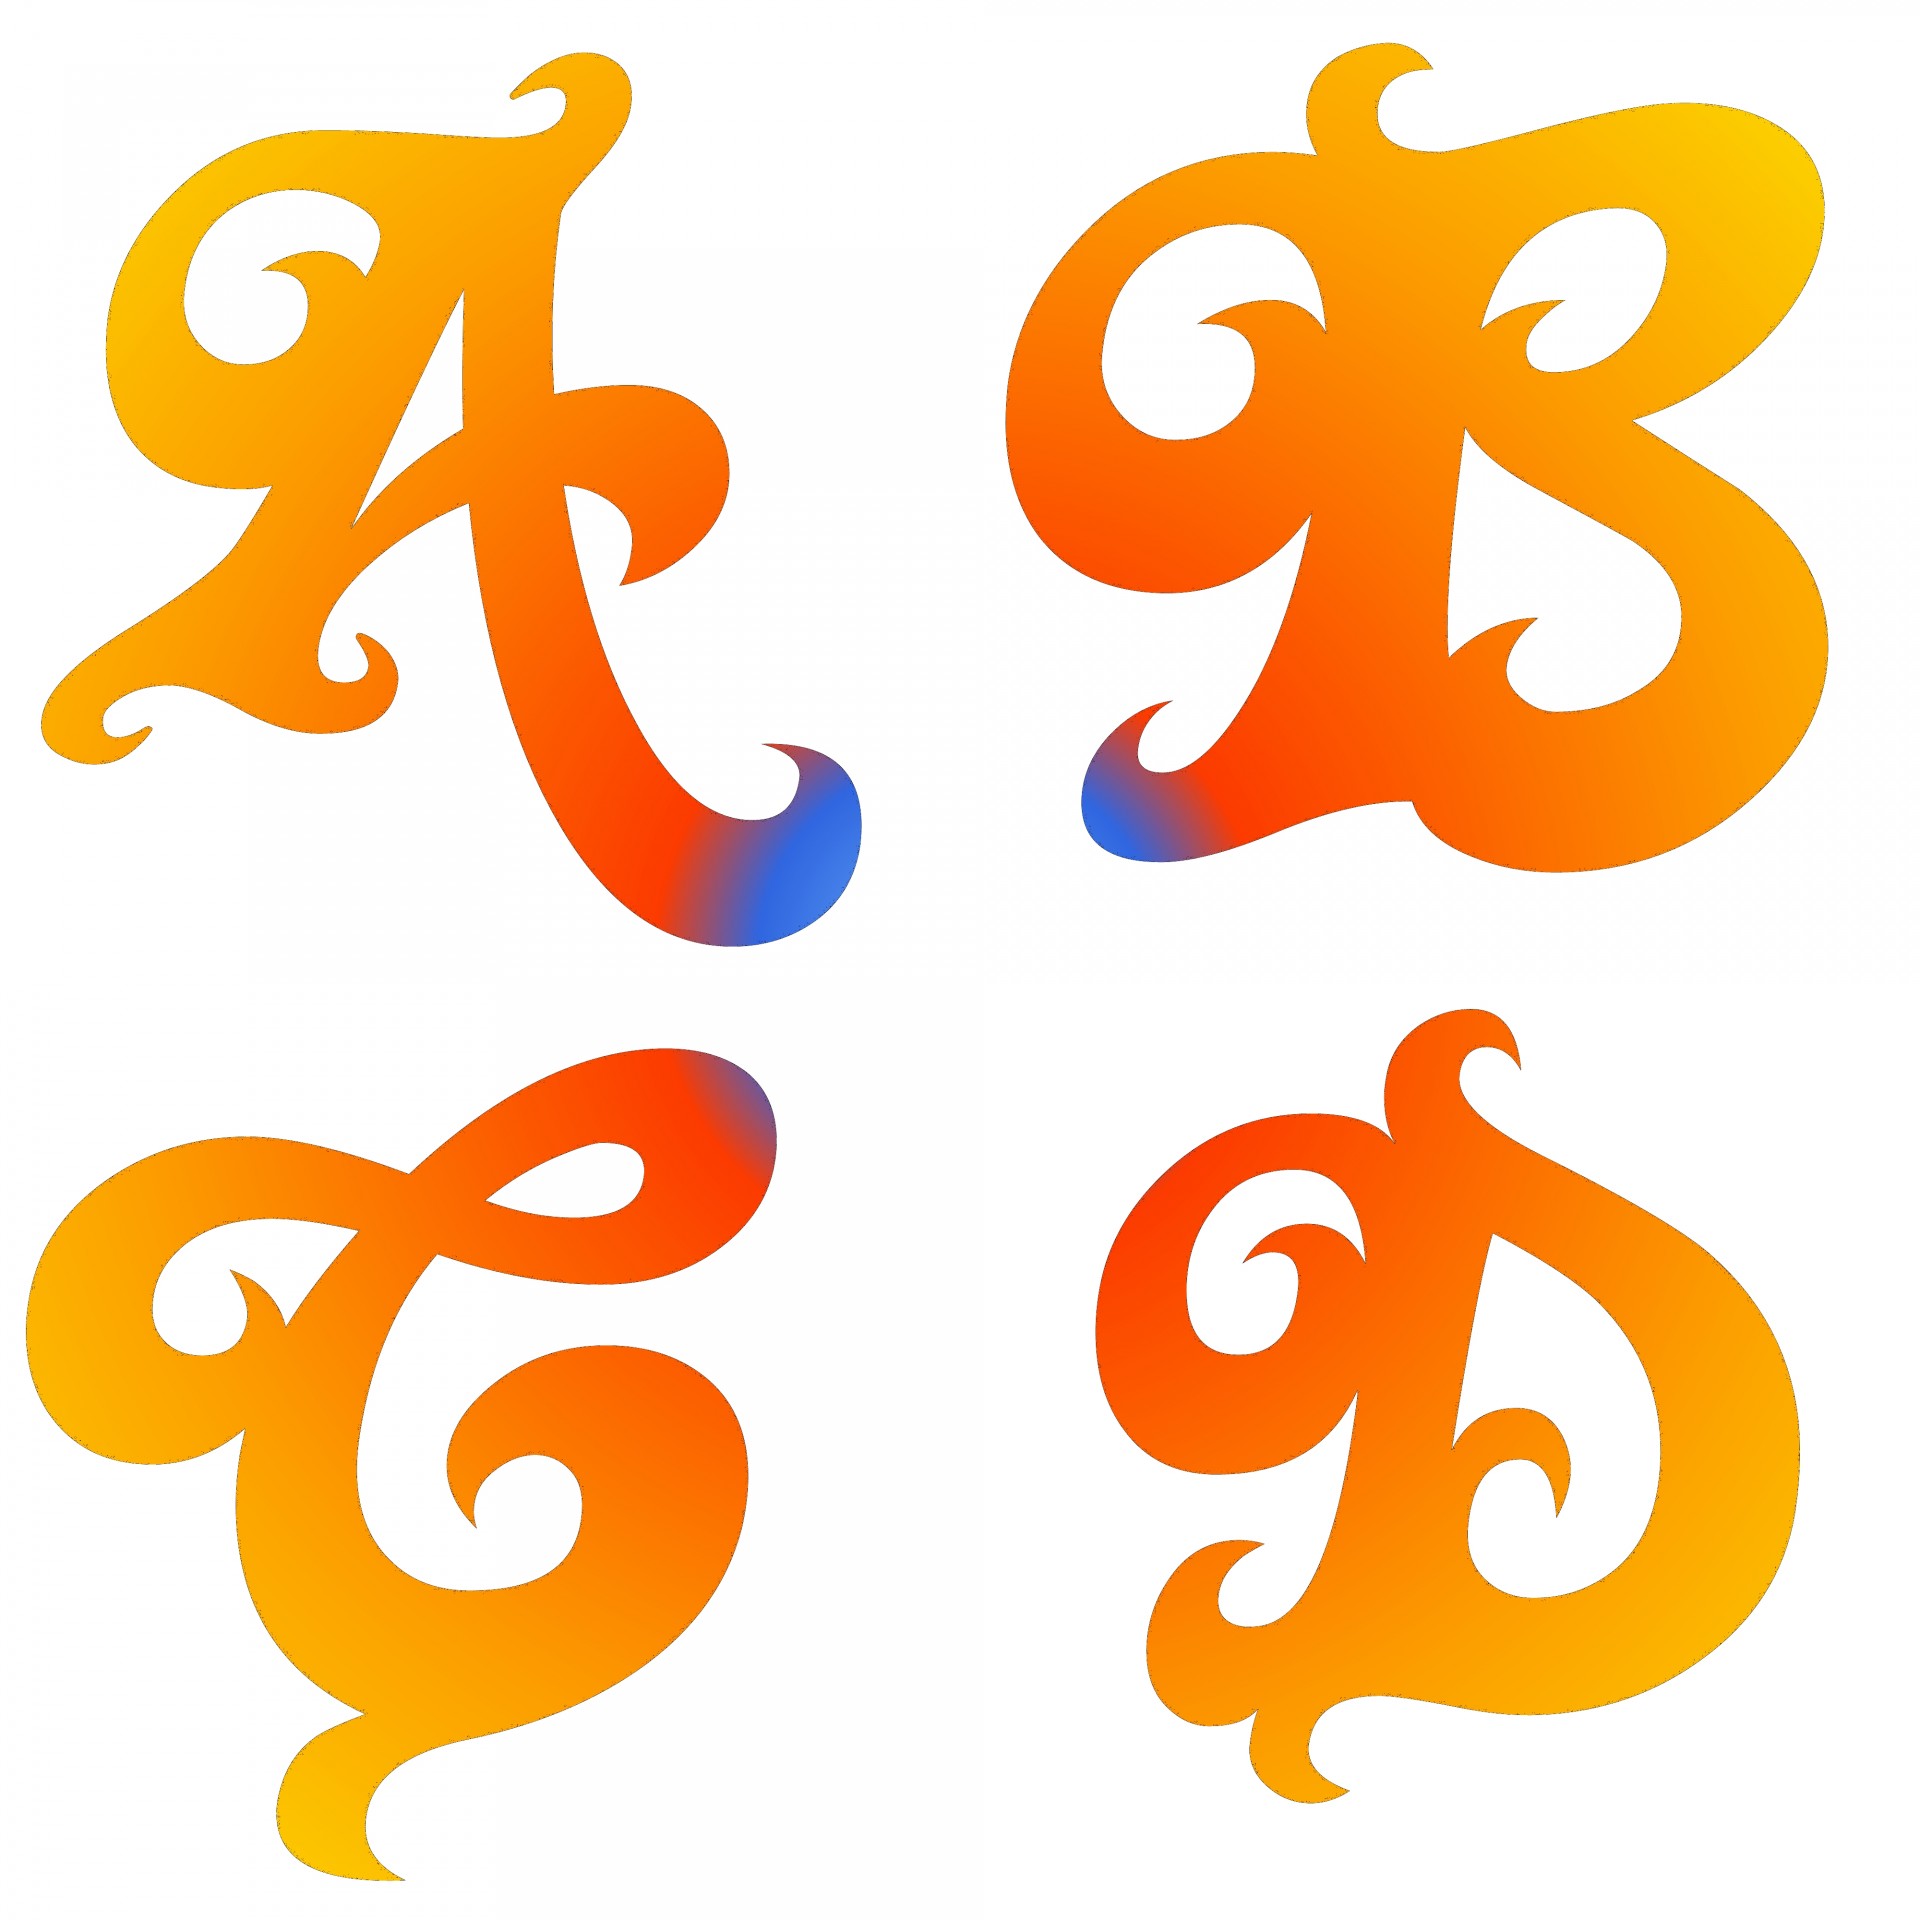 a-b-c-d-letters-free-stock-photo-public-domain-pictures